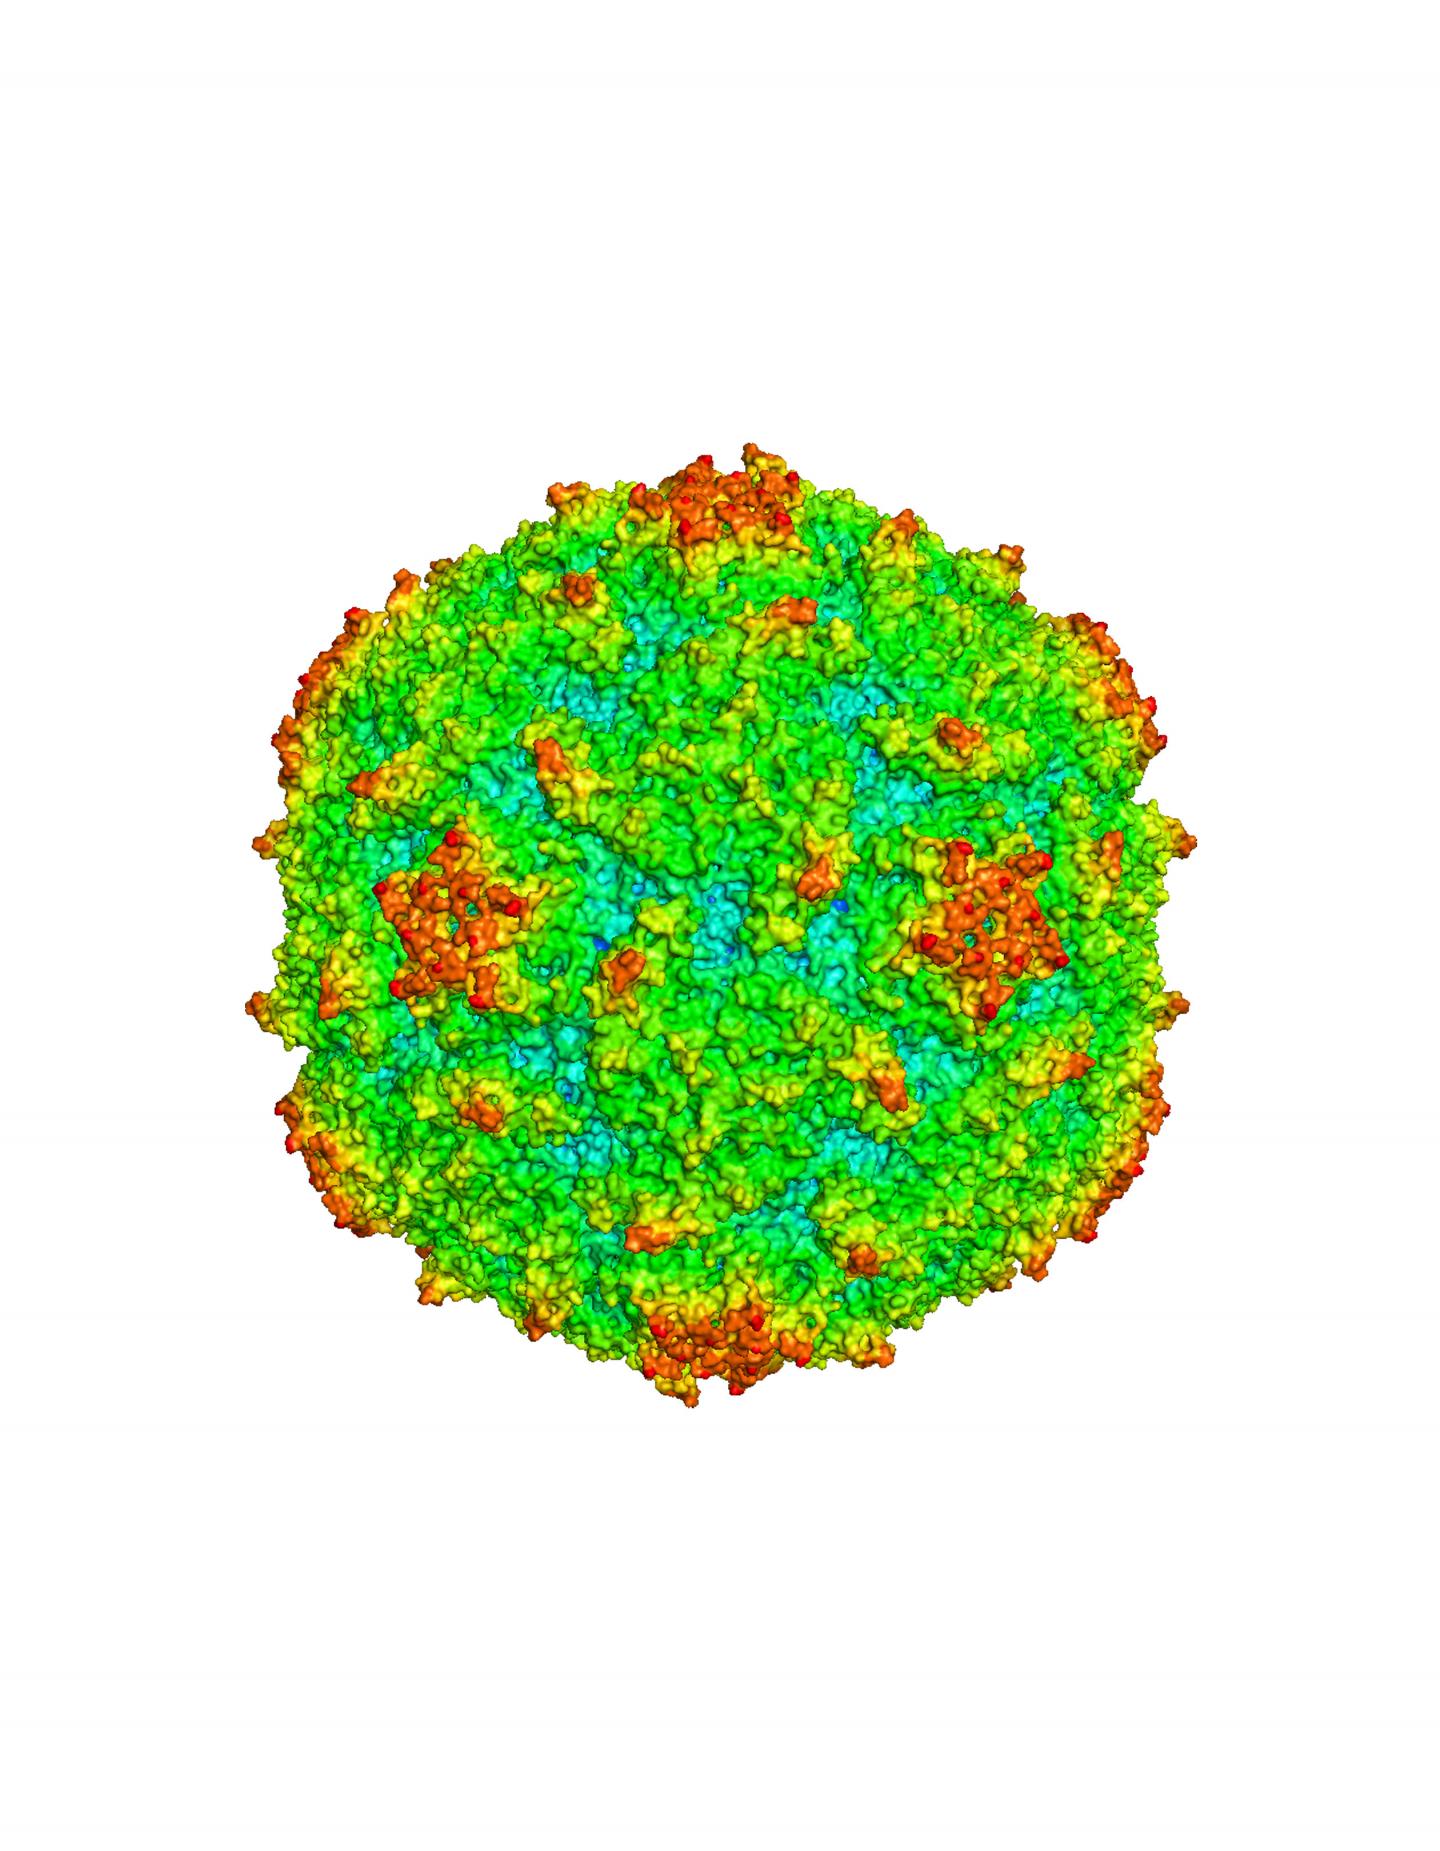 Polio Virus